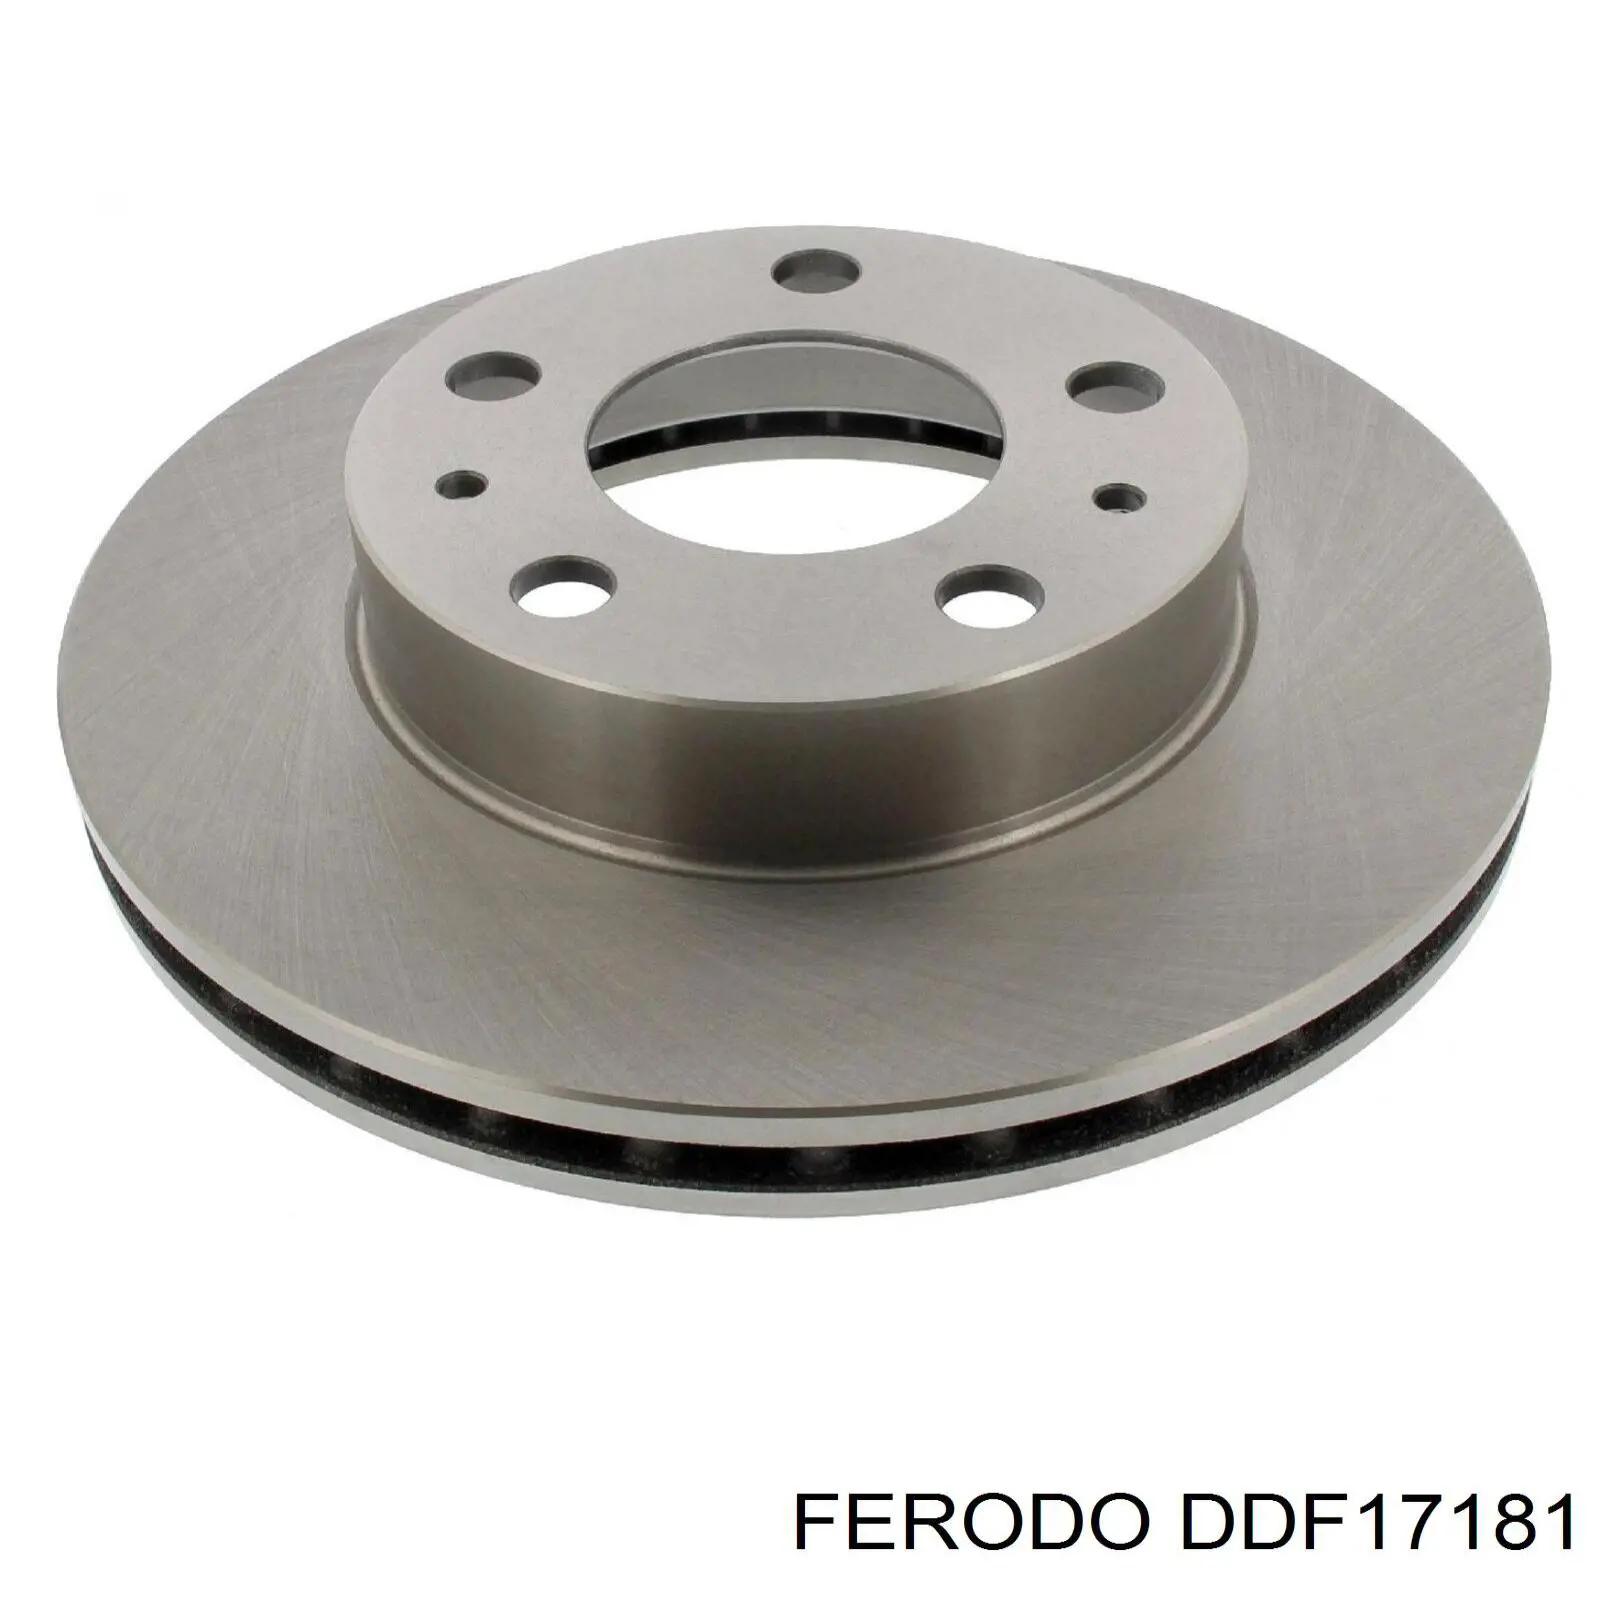 DDF17181 Ferodo disco do freio dianteiro